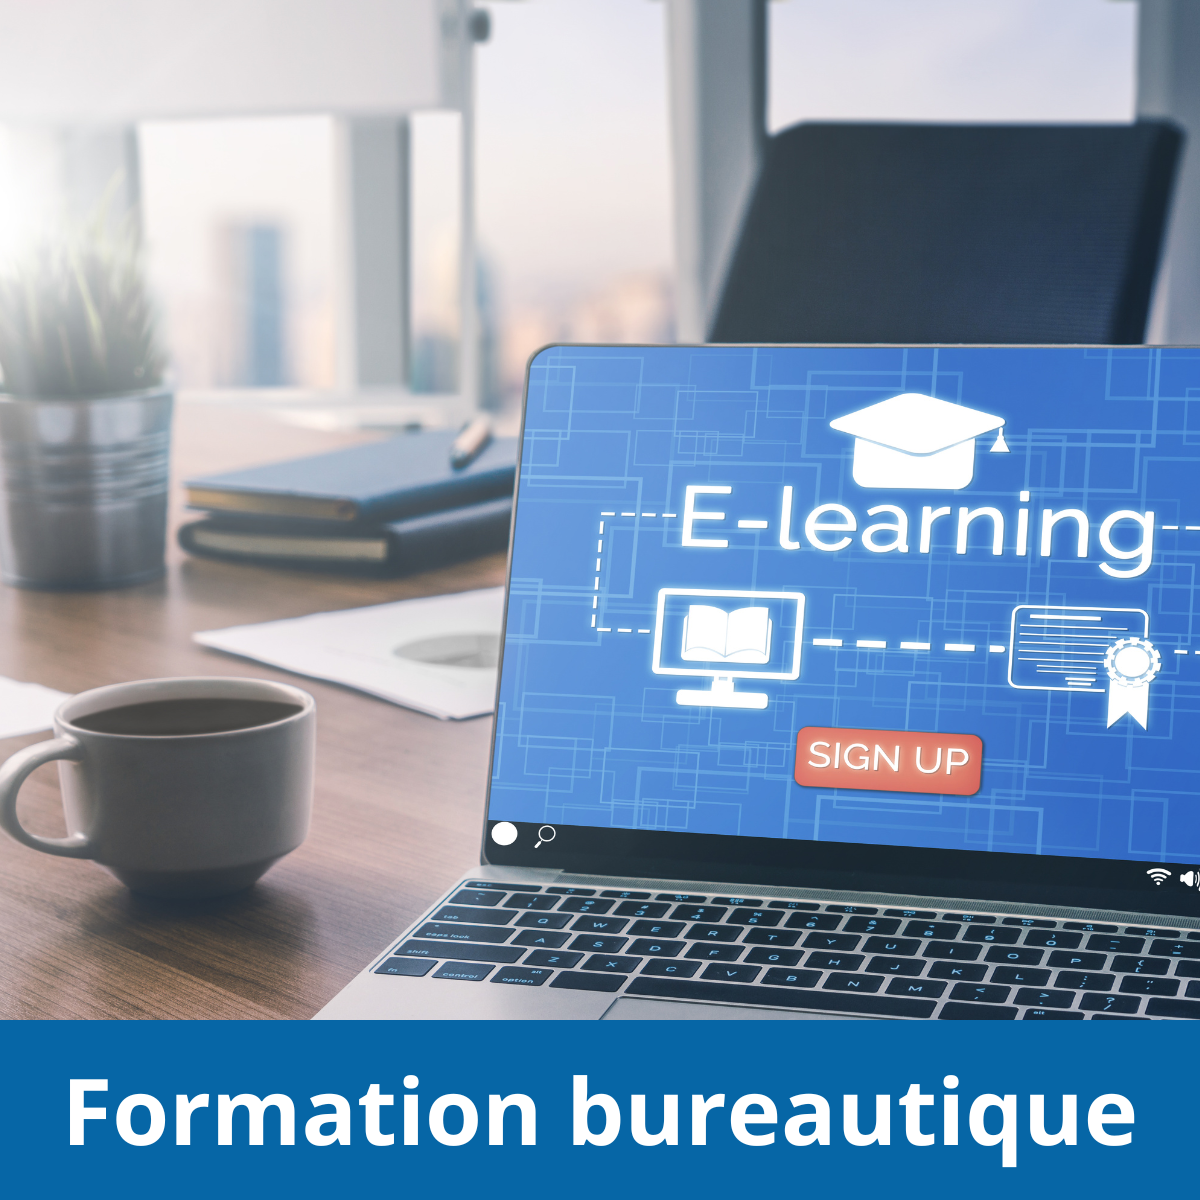 Les 5 avantages de la formation bureautique en e-learning - AccoFORM